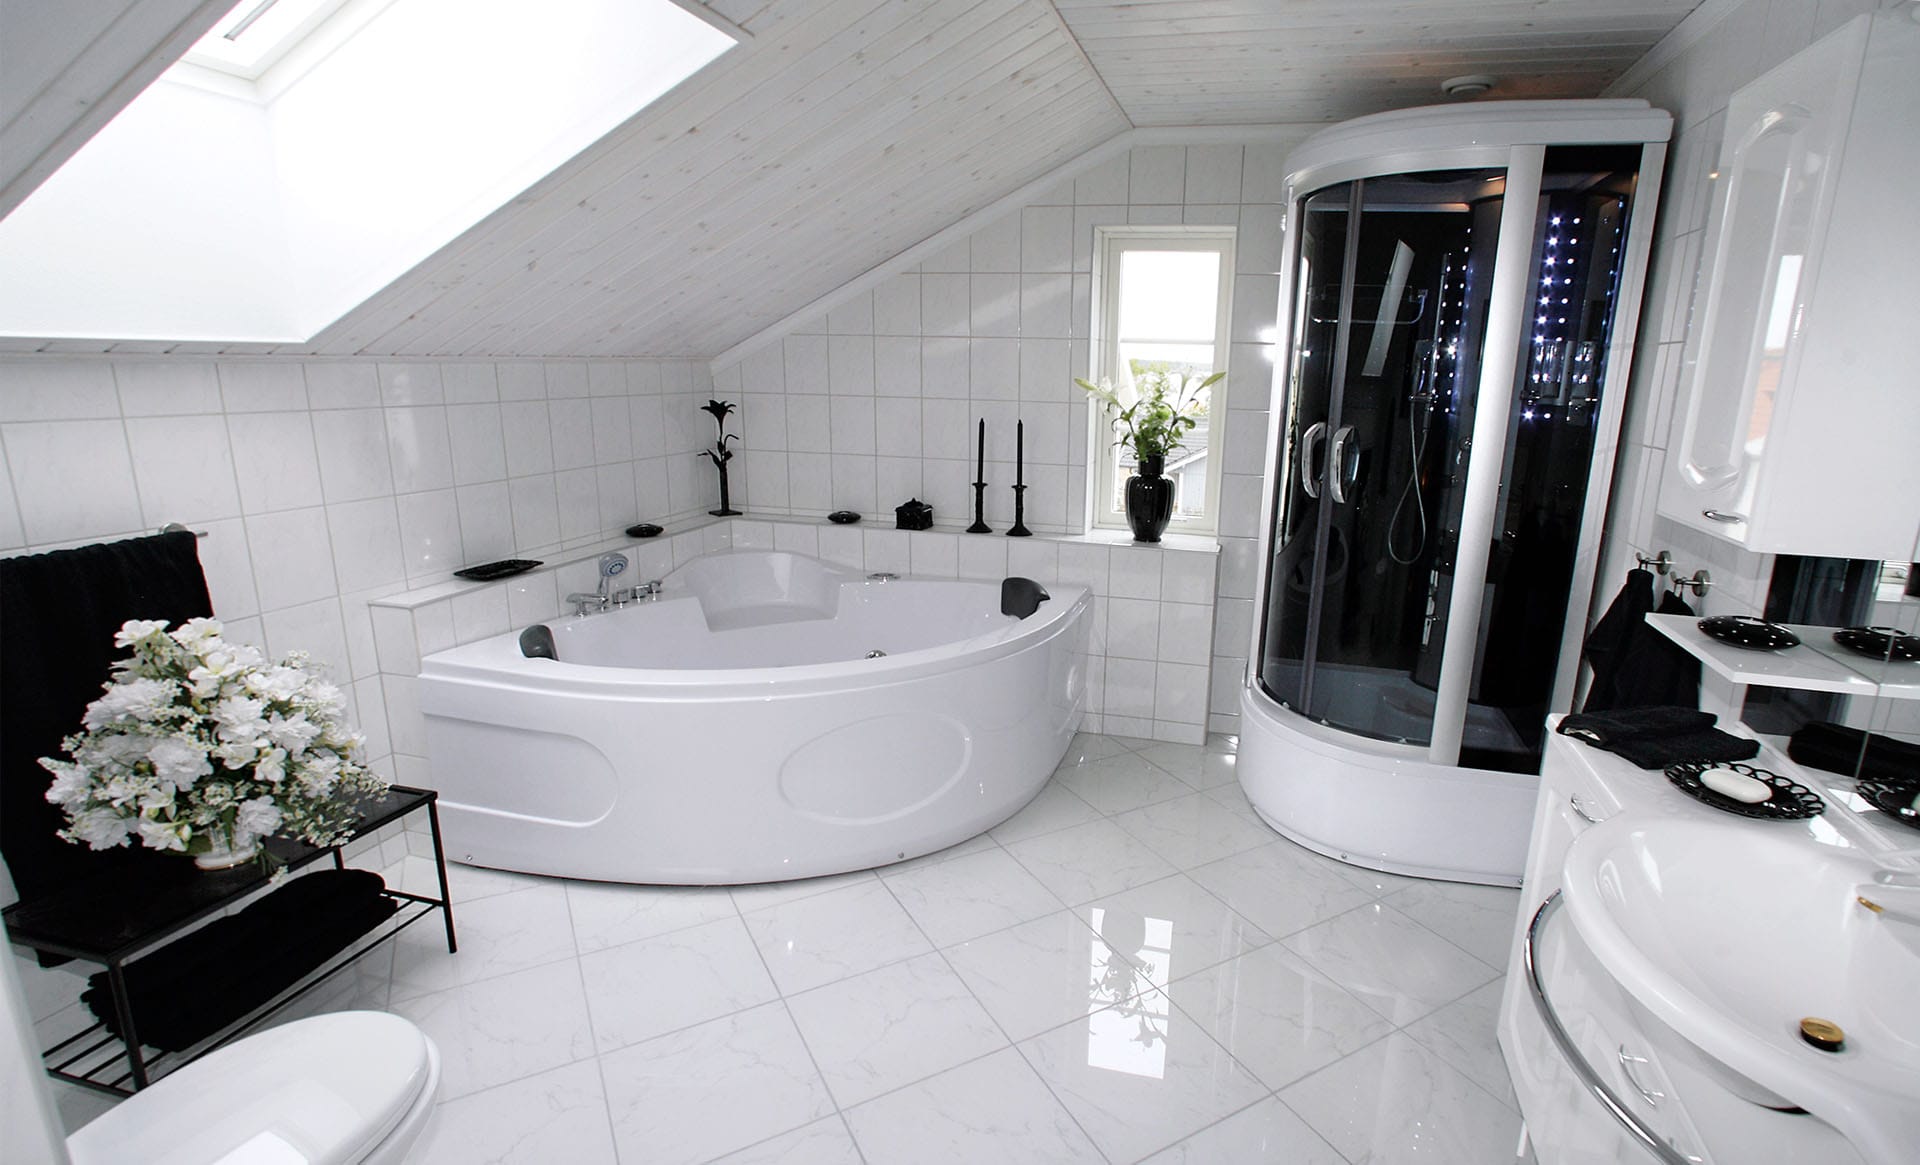 Ванная черная угловая. Шикарная ванная комната. Огромная ванная комната. Комната с джакузи. Ванная в частном доме с джакузи и душевой.